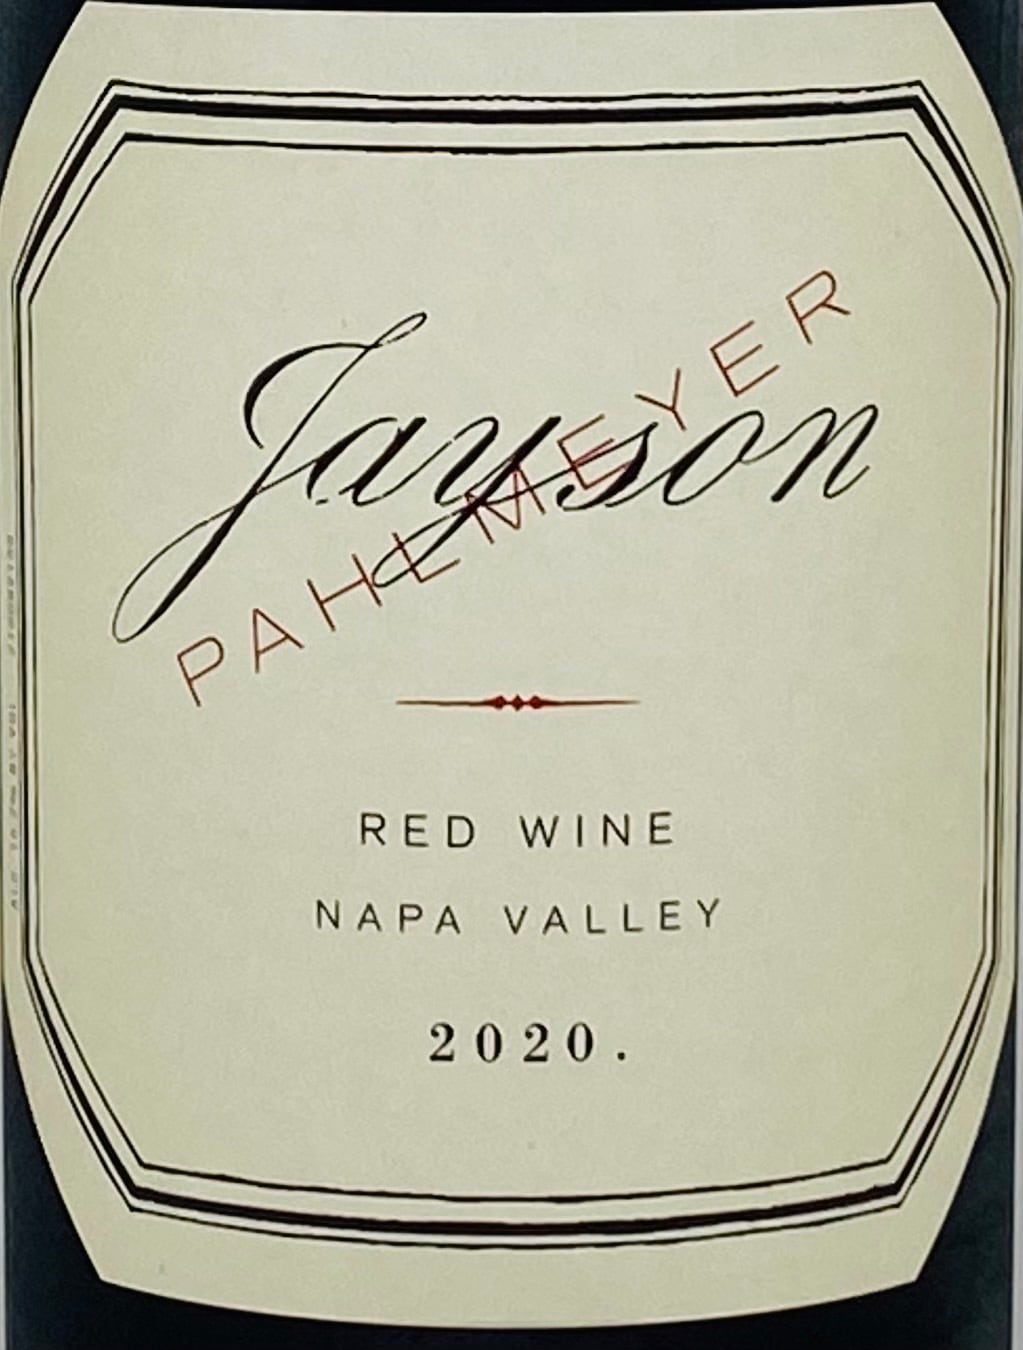 パルメイヤー プロプライエタリー レッド 1998 Pahlmeye P op ieta y Red アメリカ カリフォルニア 赤ワイン 